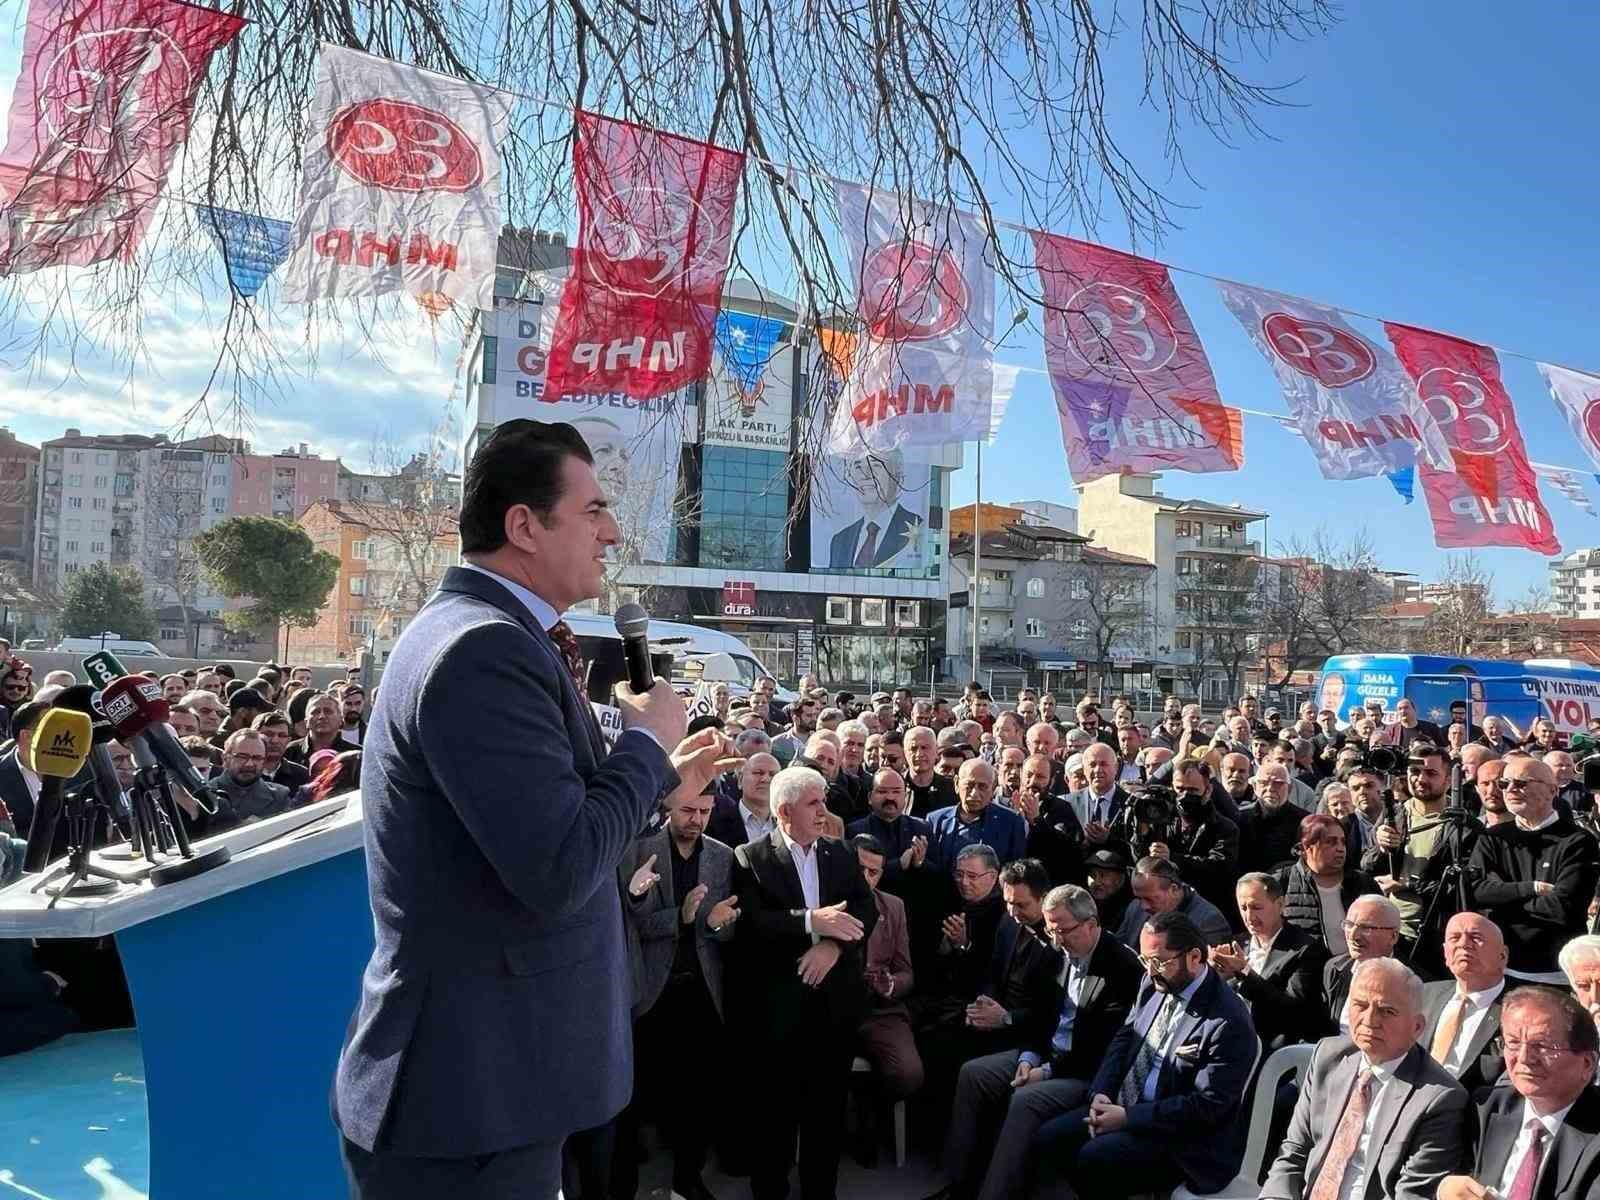 AK Parti İl Başkanı Güngör; “Cumhur İttifakımız ile birlikte Denizli’de hedef 20’de 20”